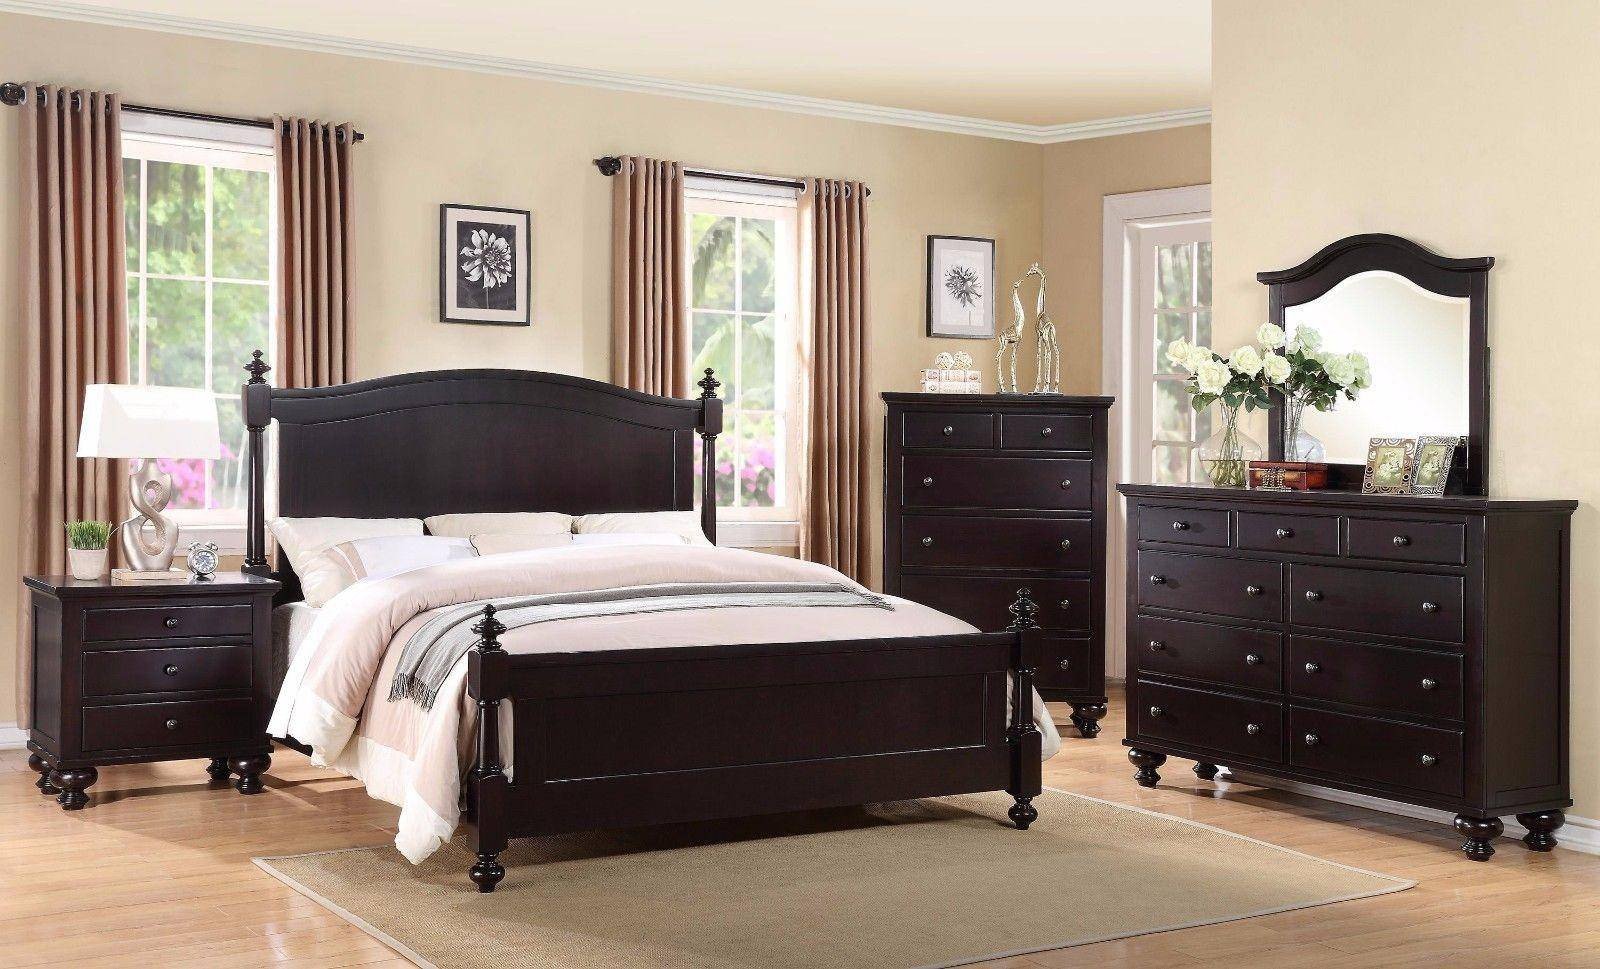 King Size Bedroom Set Lovely Crown Mark B1350 sommer Traditional Black Espresso King Size Bedroom Set 3 Pcs